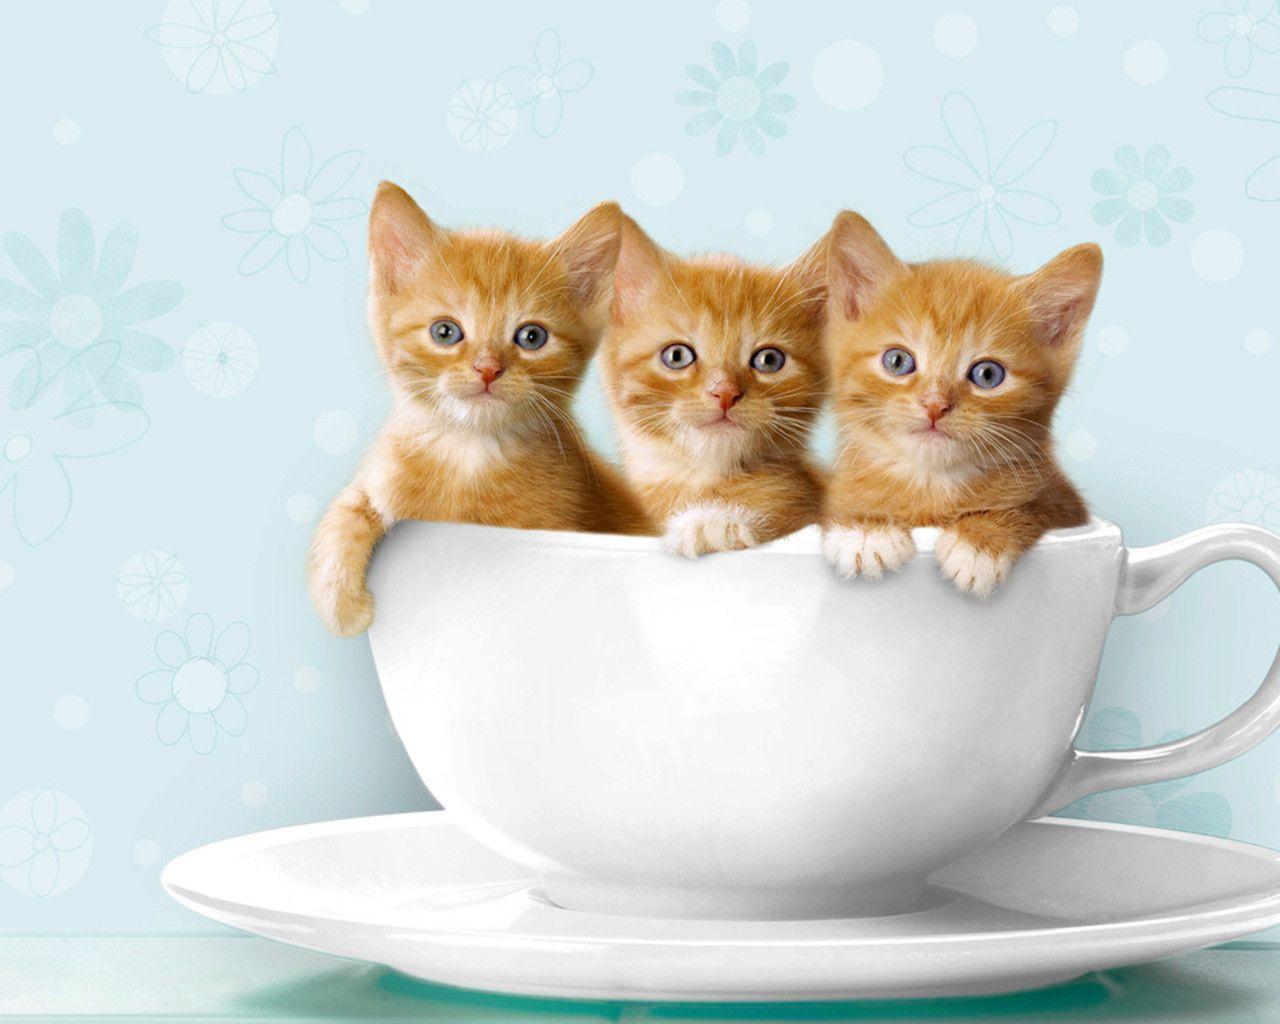 Cute Cats Wallpaper. Cats & Kittens